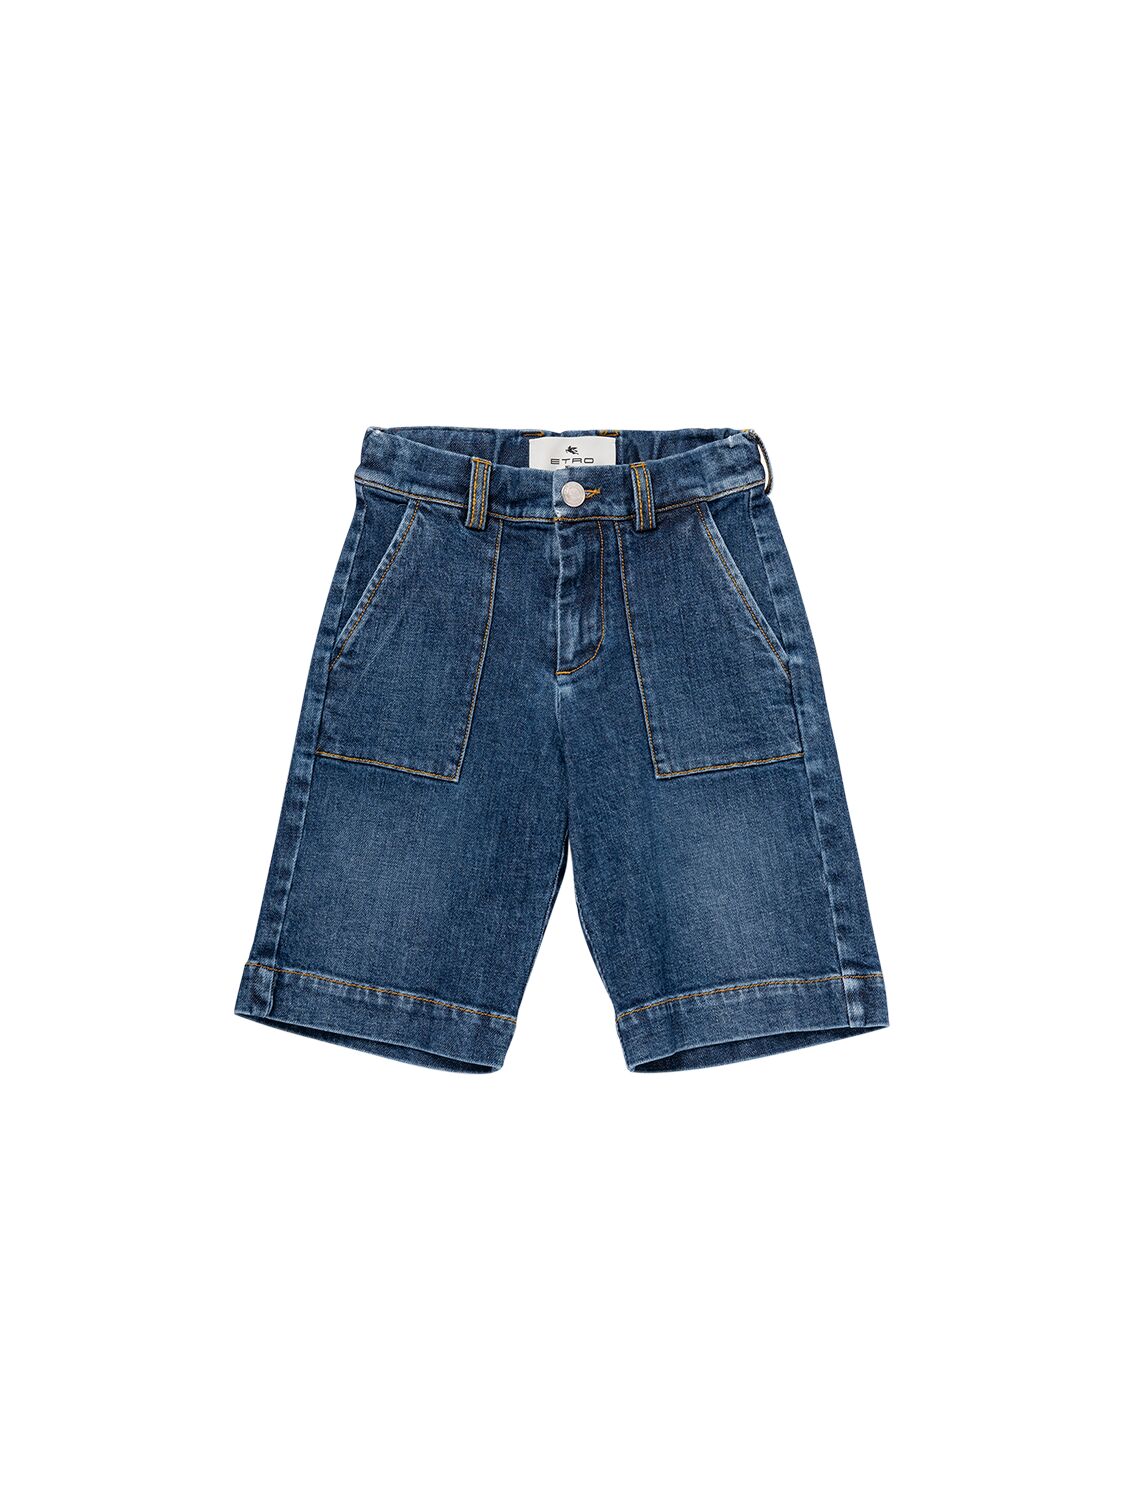 Etro Kids' Cotton Denim Shorts